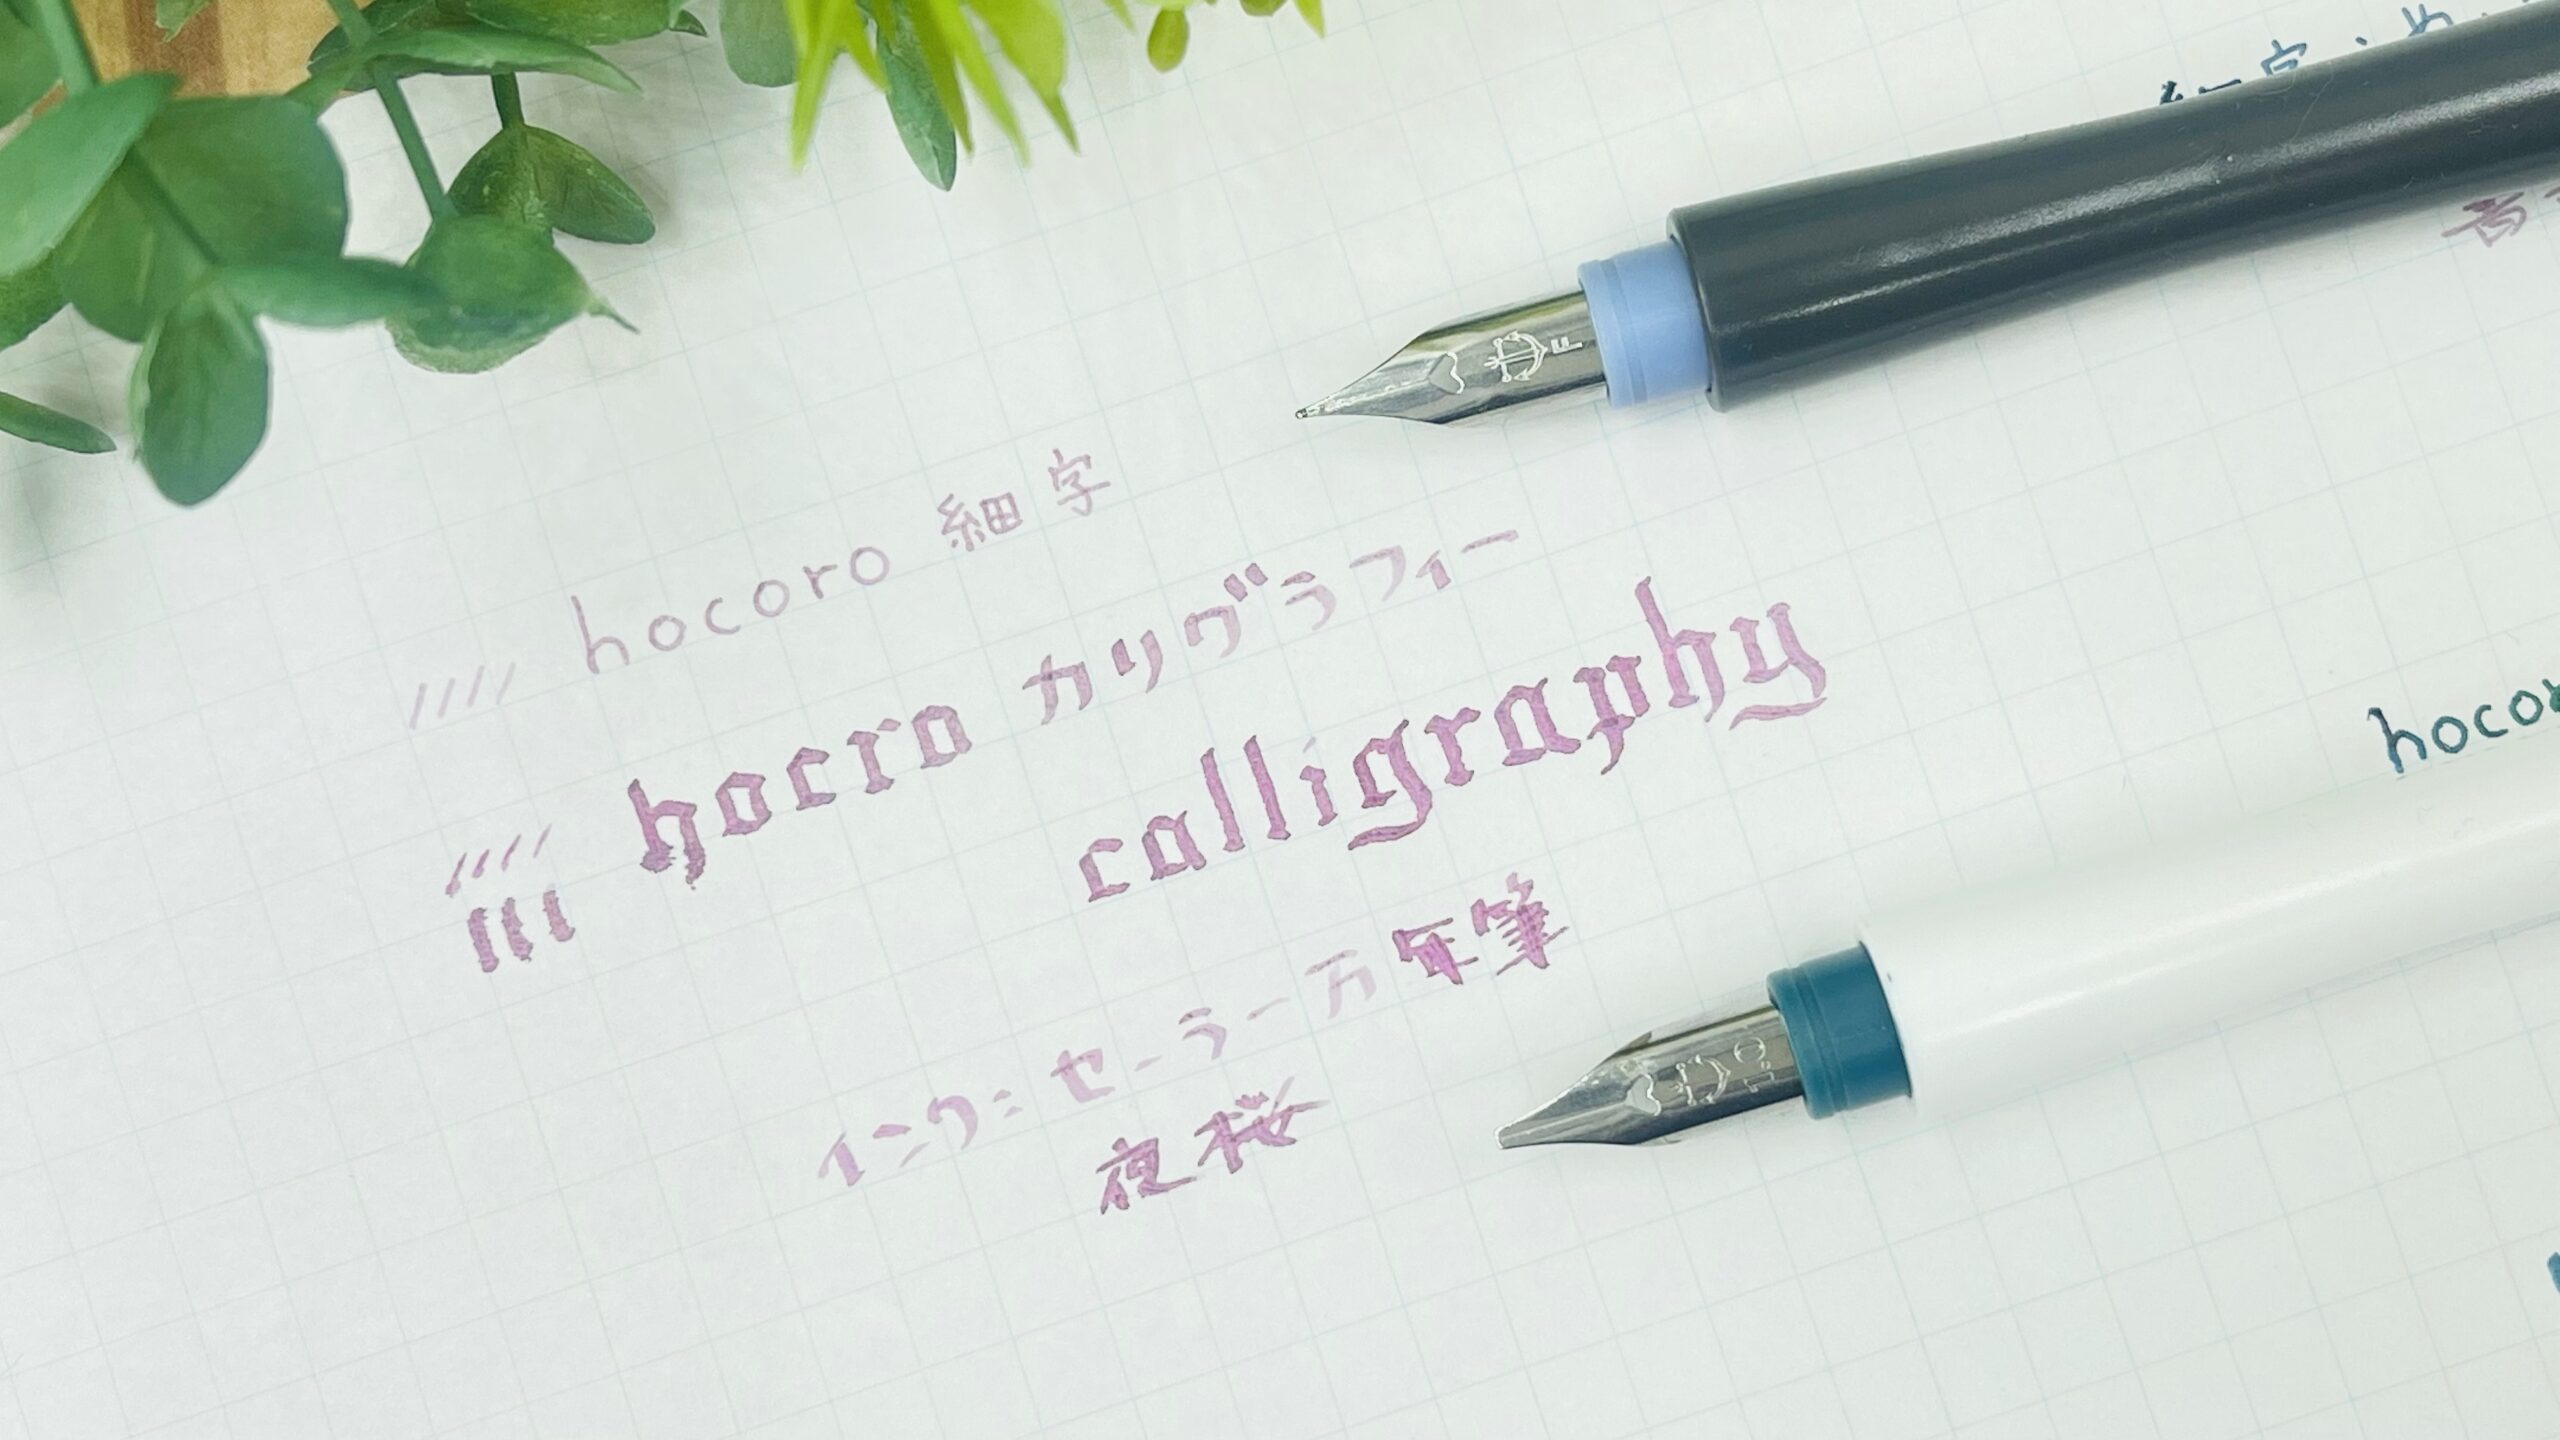 セーラー万年筆のつけペン Hocoro ホコロ を使ってみた感想 細字 カリグラフィー カリグラフィー ブログ カリグラフィー メモ